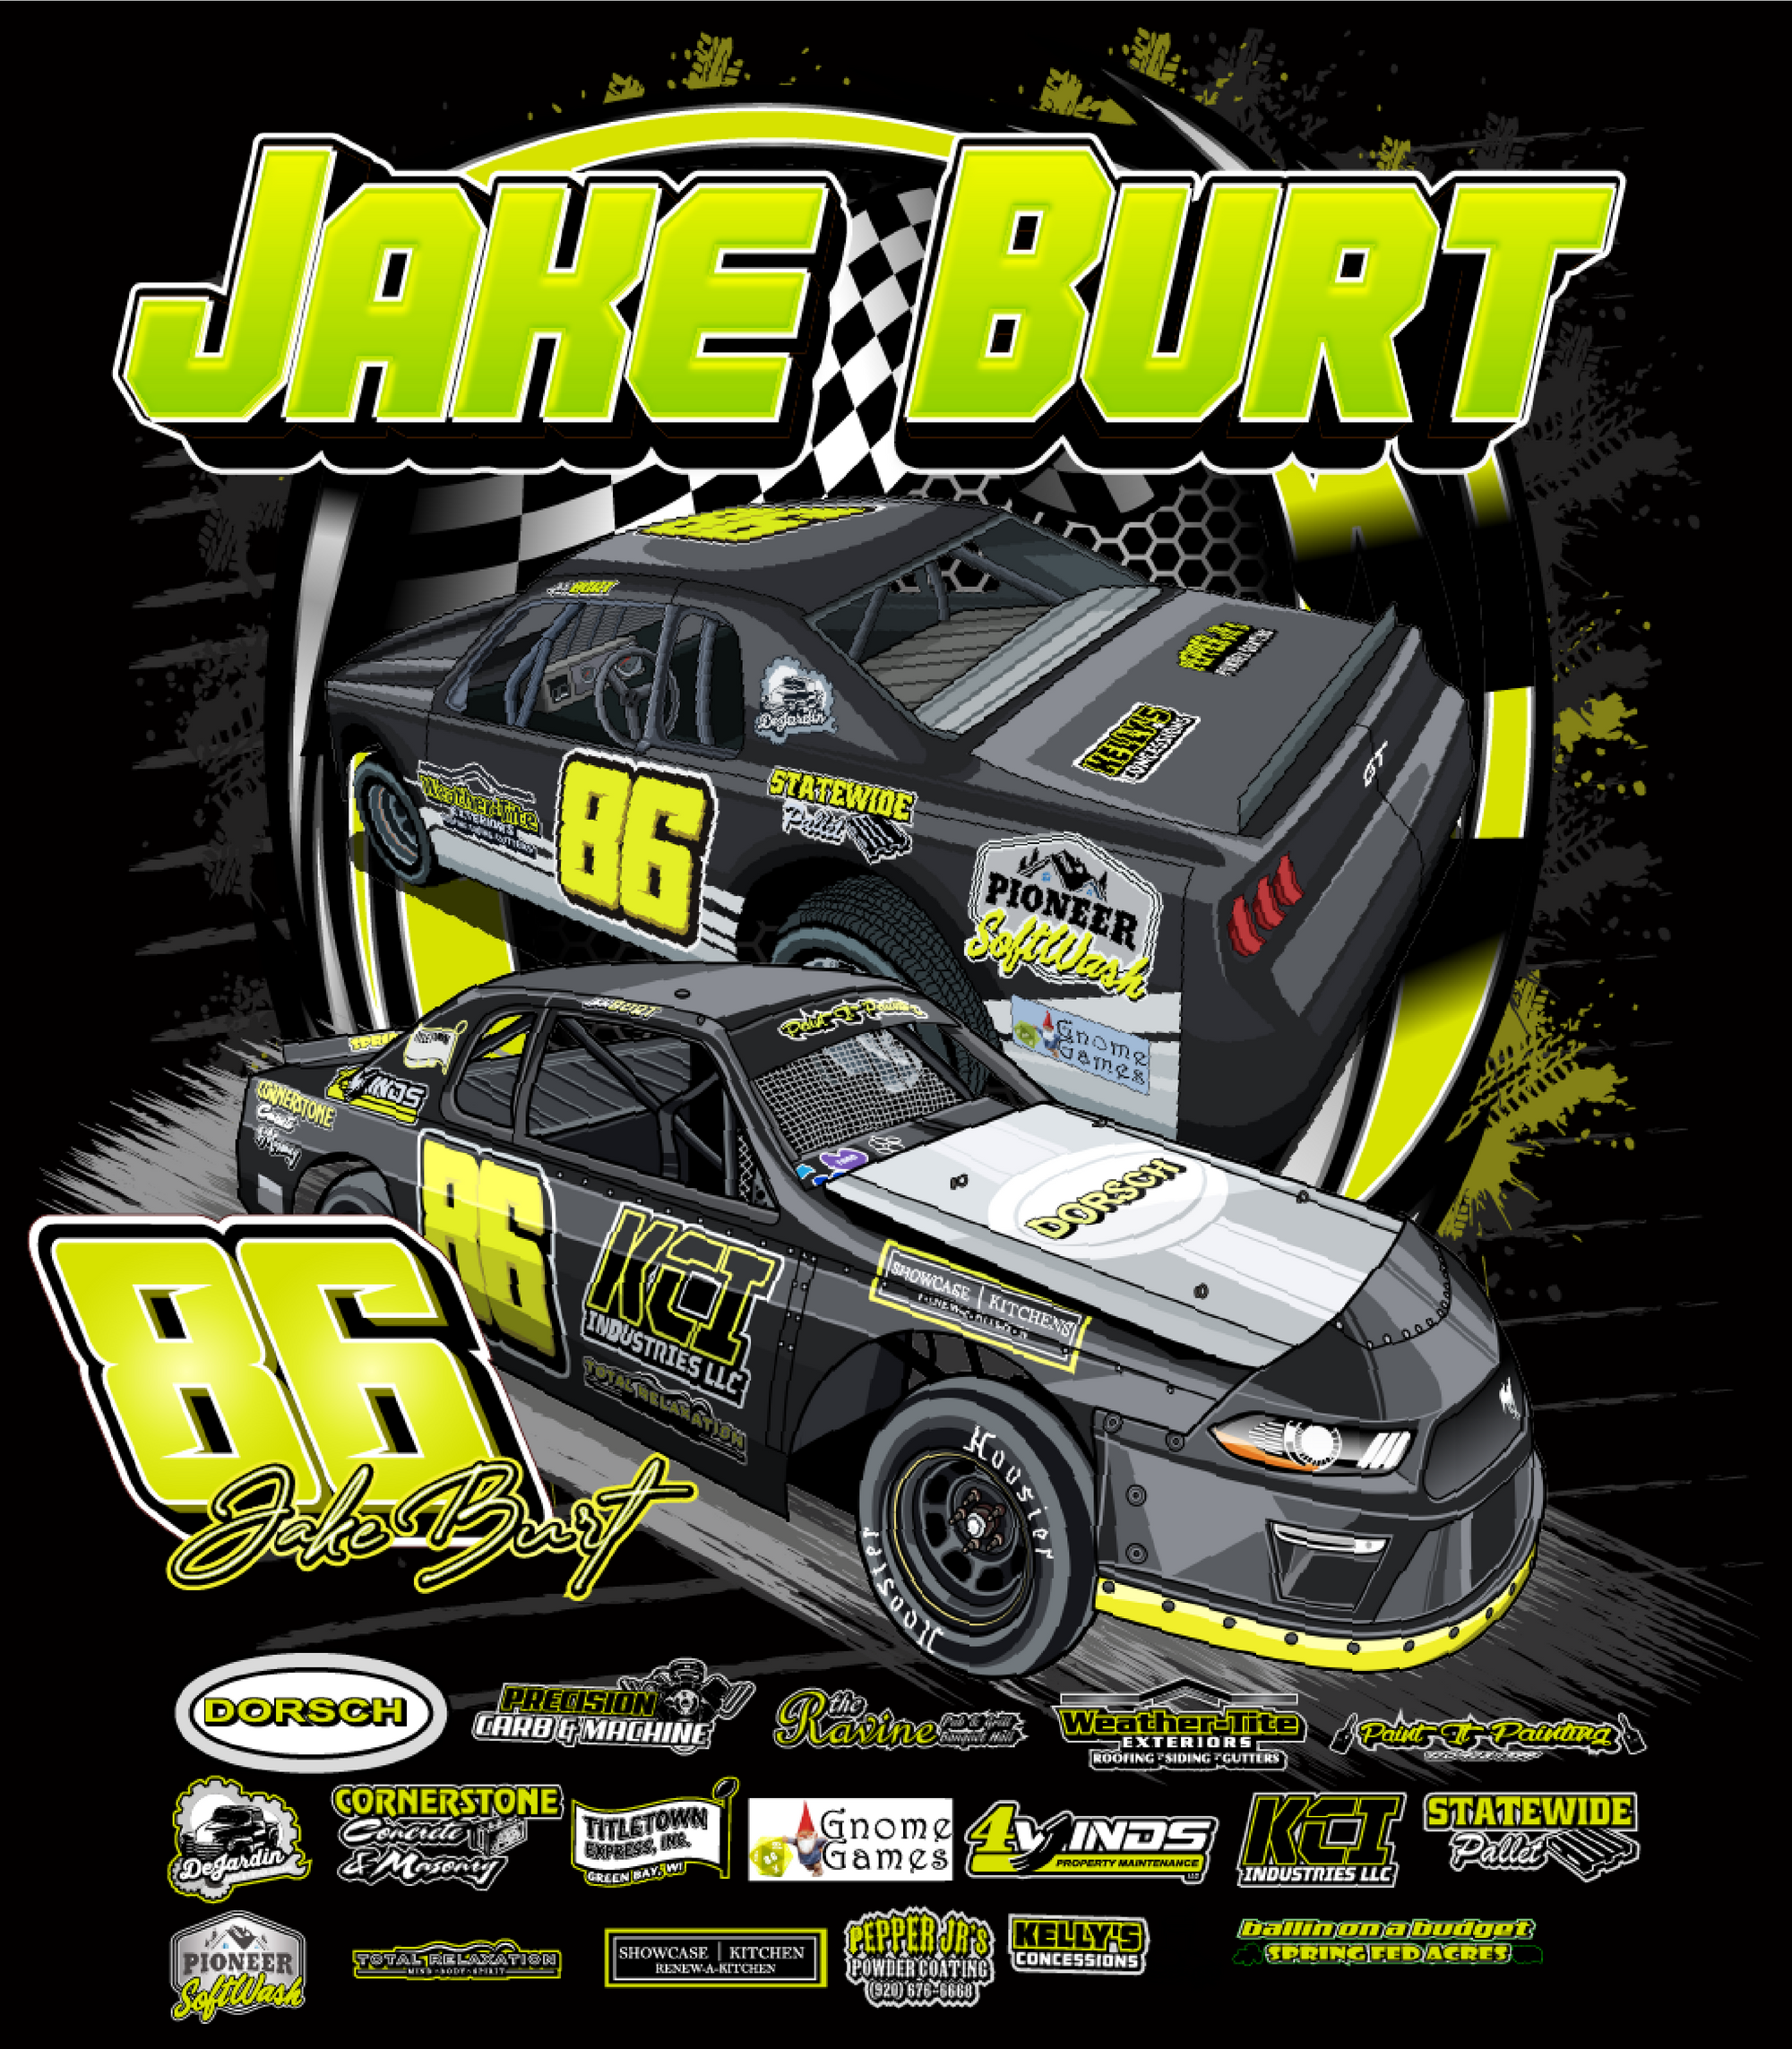 Jake Burt